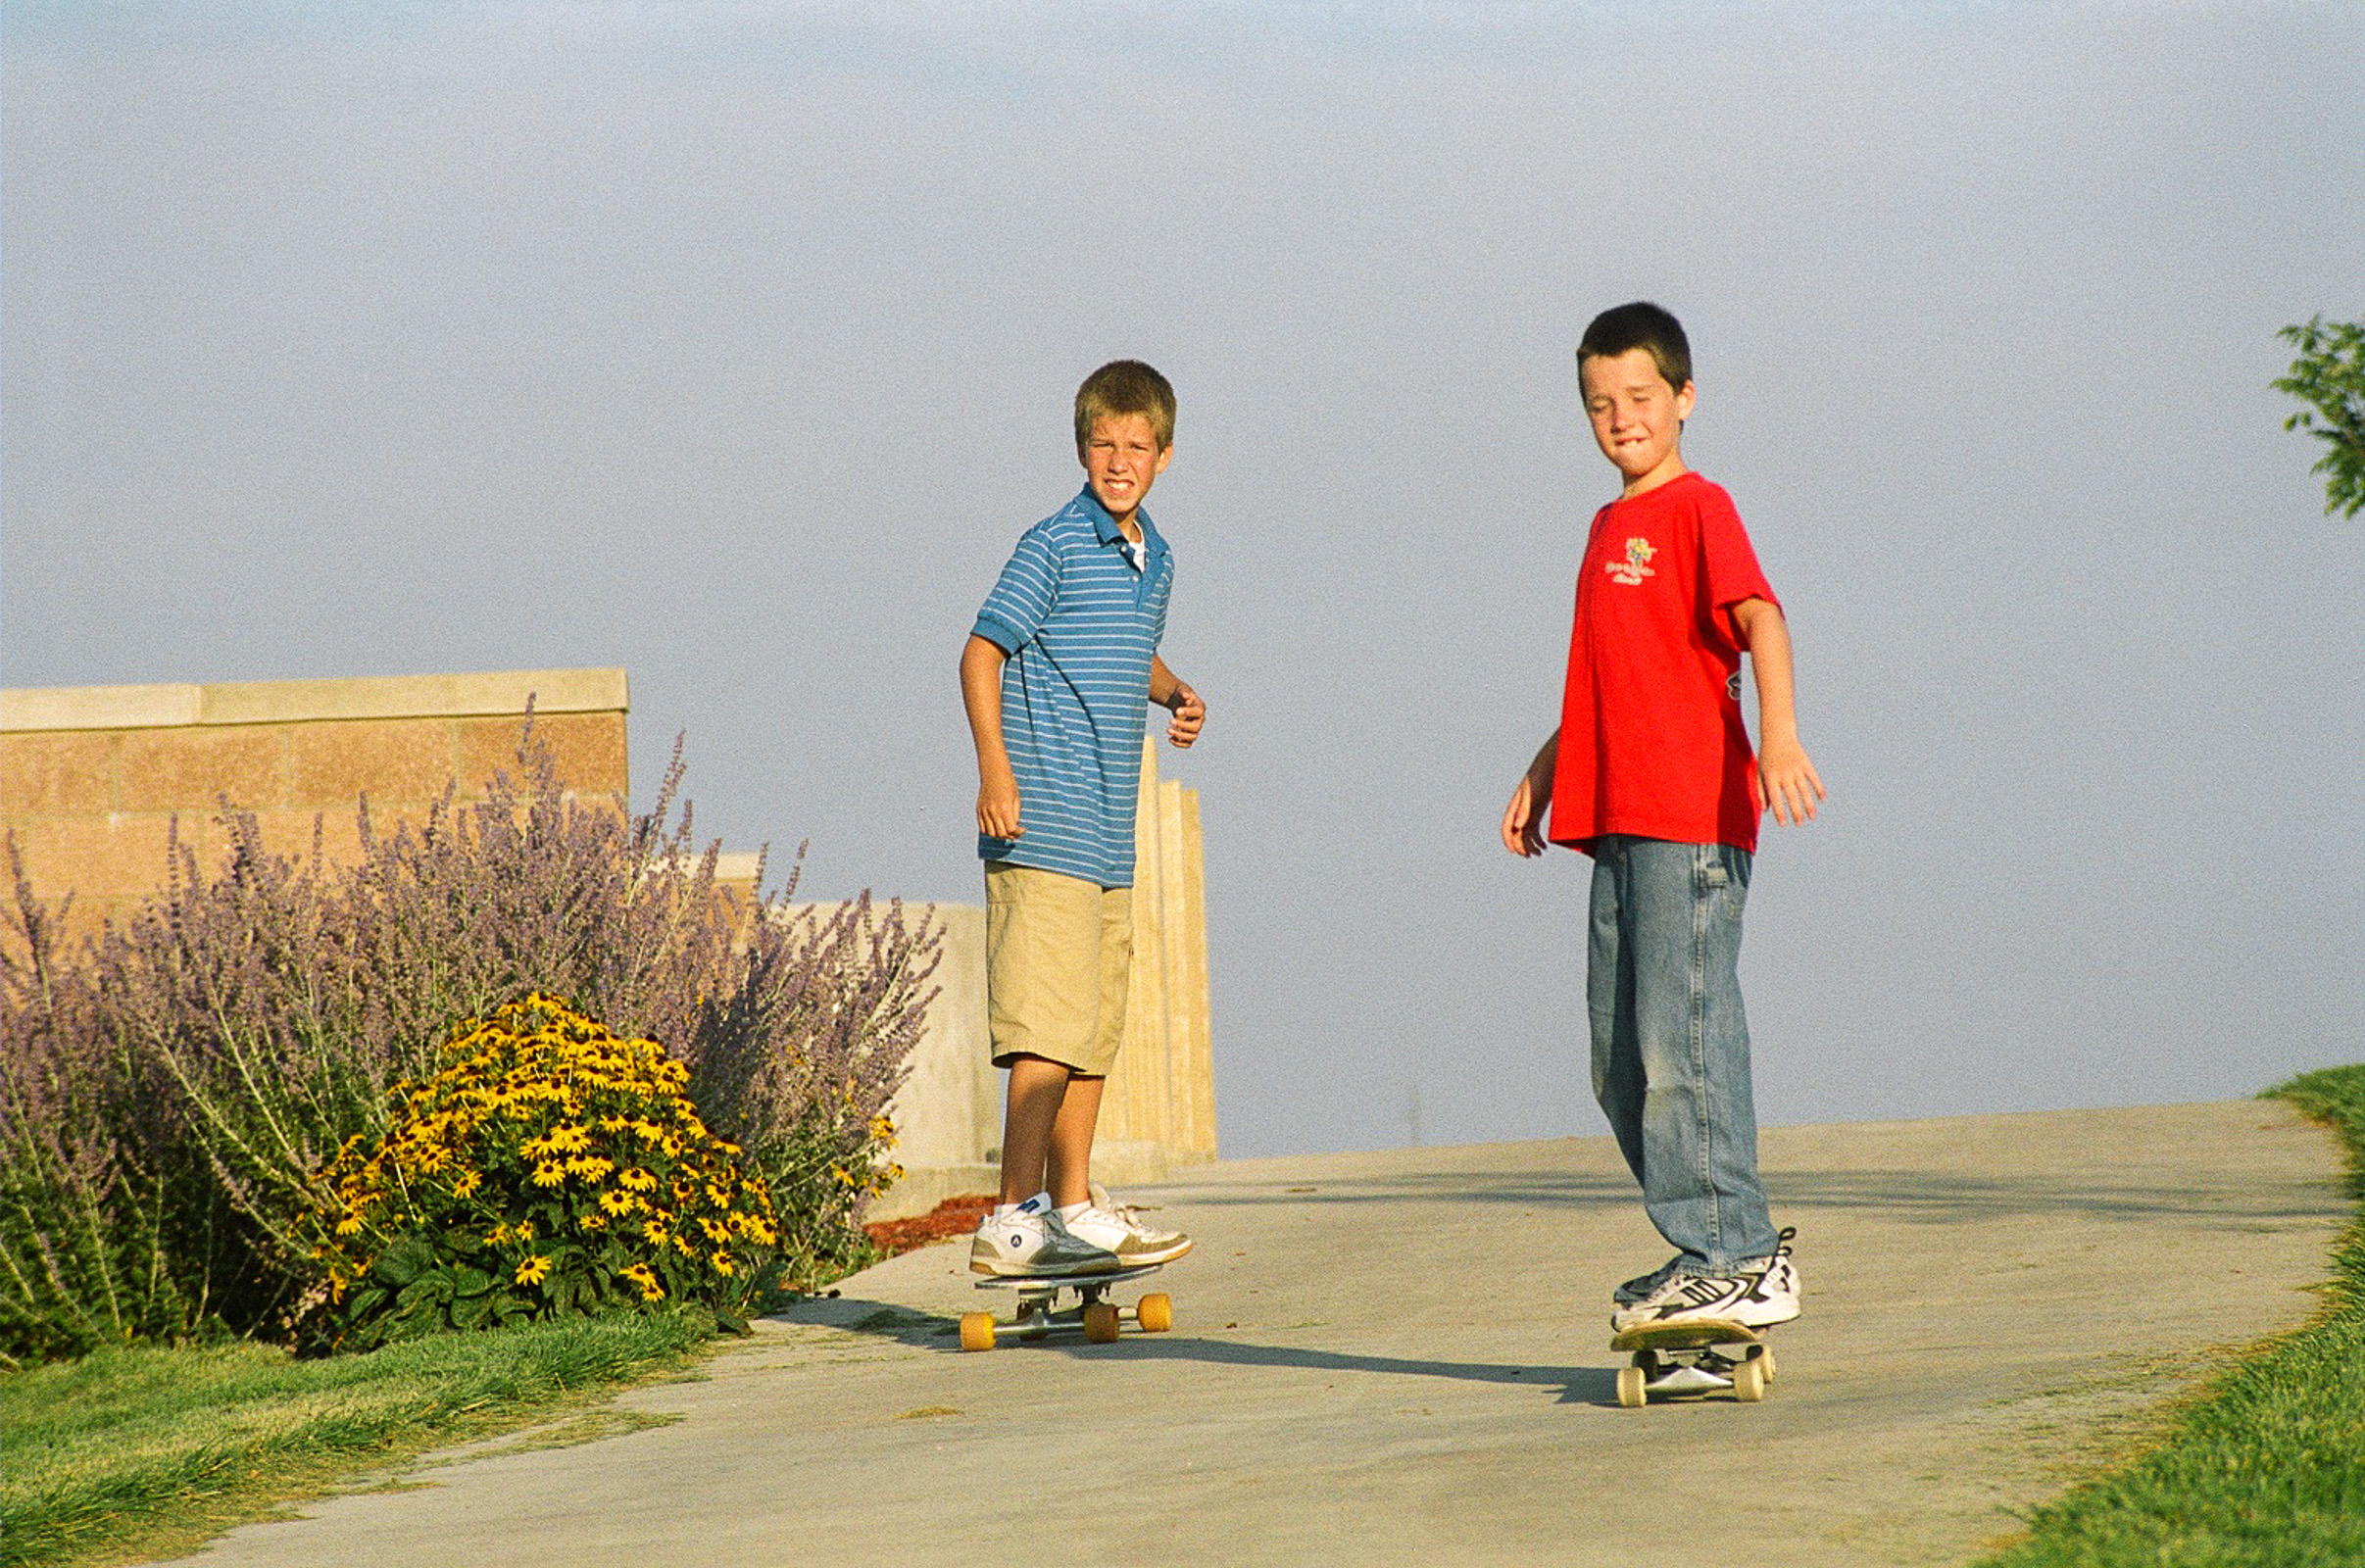 Skateboard-boys1.jpg